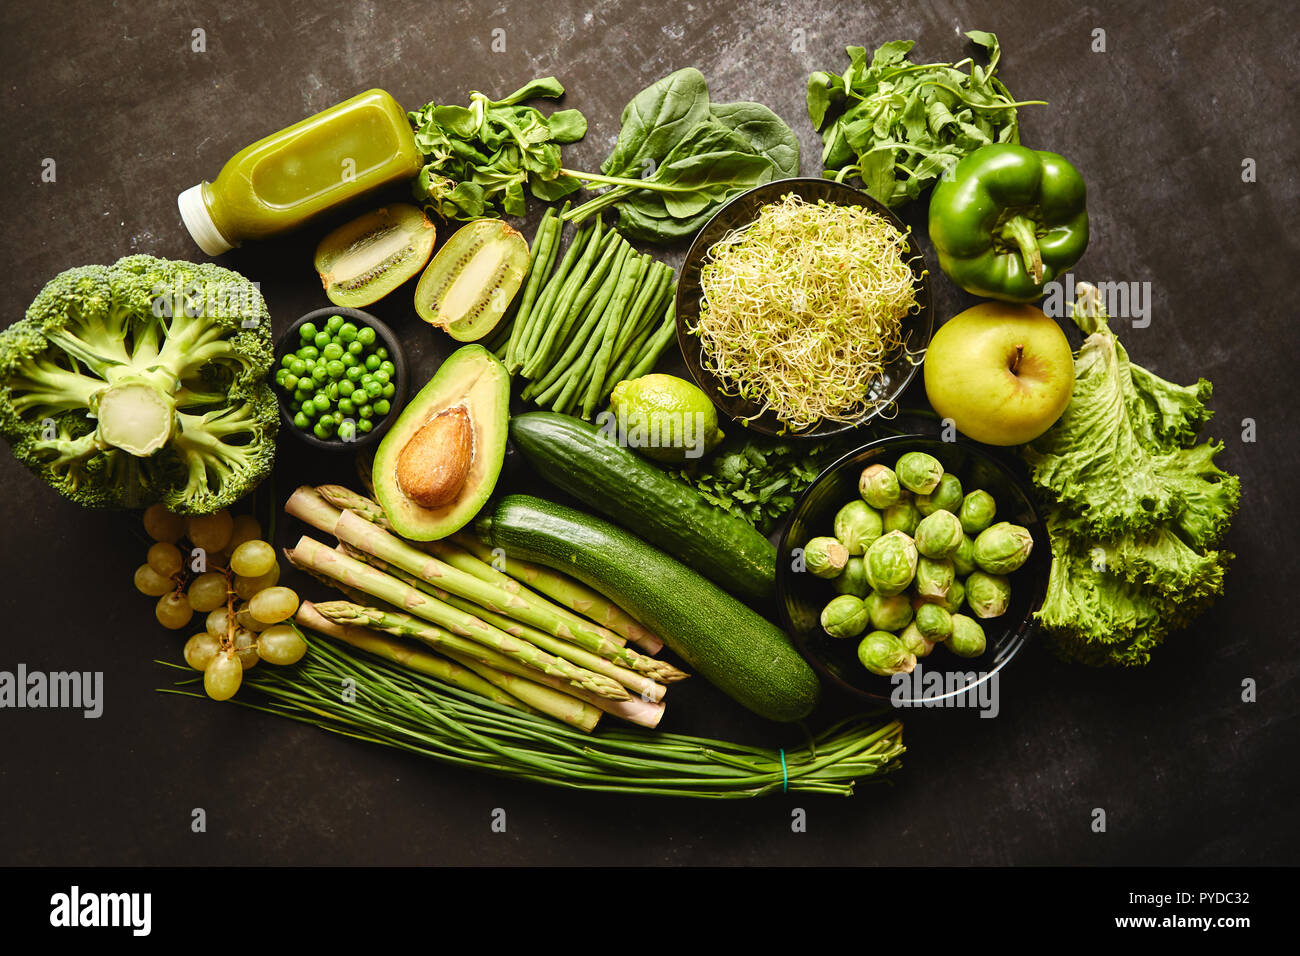 Verde composición de alimentos saludables con el aguacate, el brócoli, la manzana, cucomber smoothie, espárragos, kiwi y bean. Colocado sobre un fondo oscuro. Vista desde arriba. Foto de stock